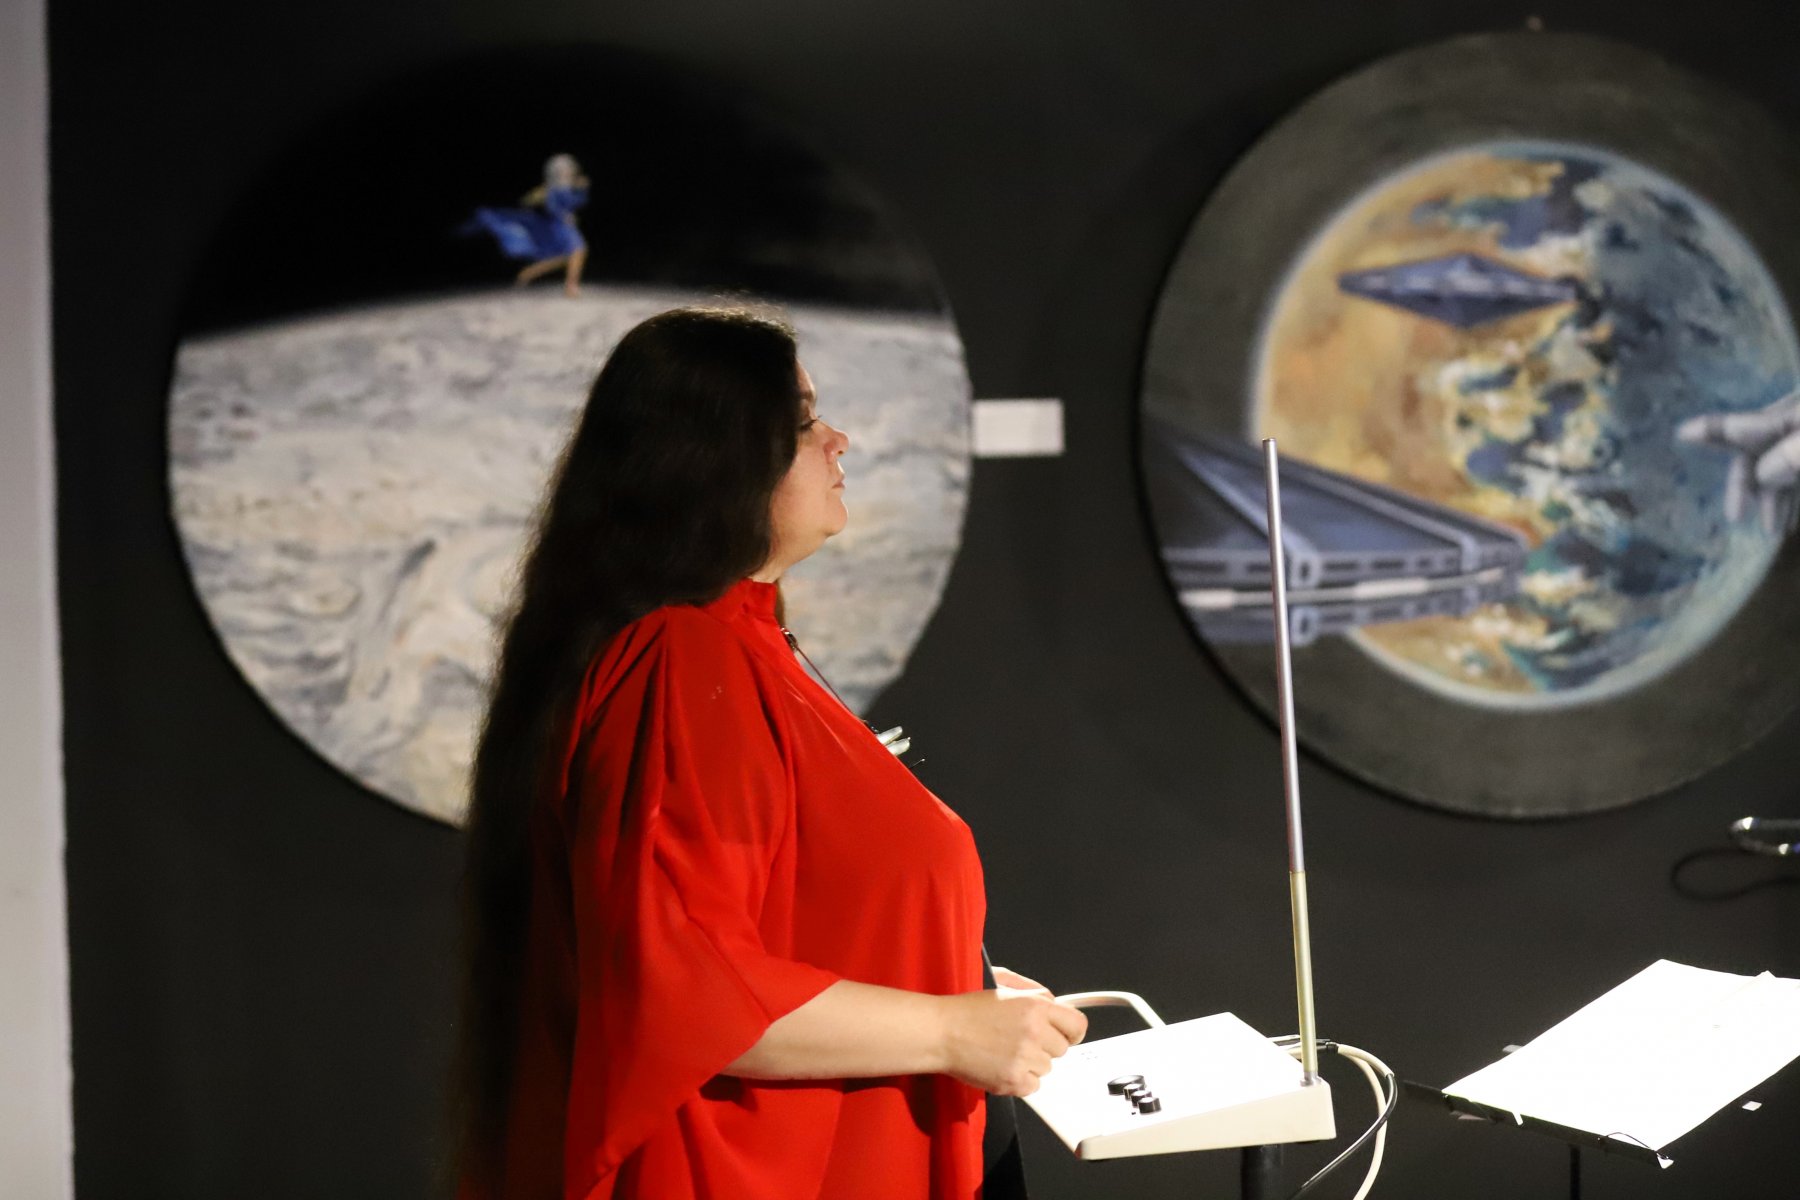 Лунная соната и Губка Боб: гости Центра современного искусства МАРС услышали игру на терменвоксе 